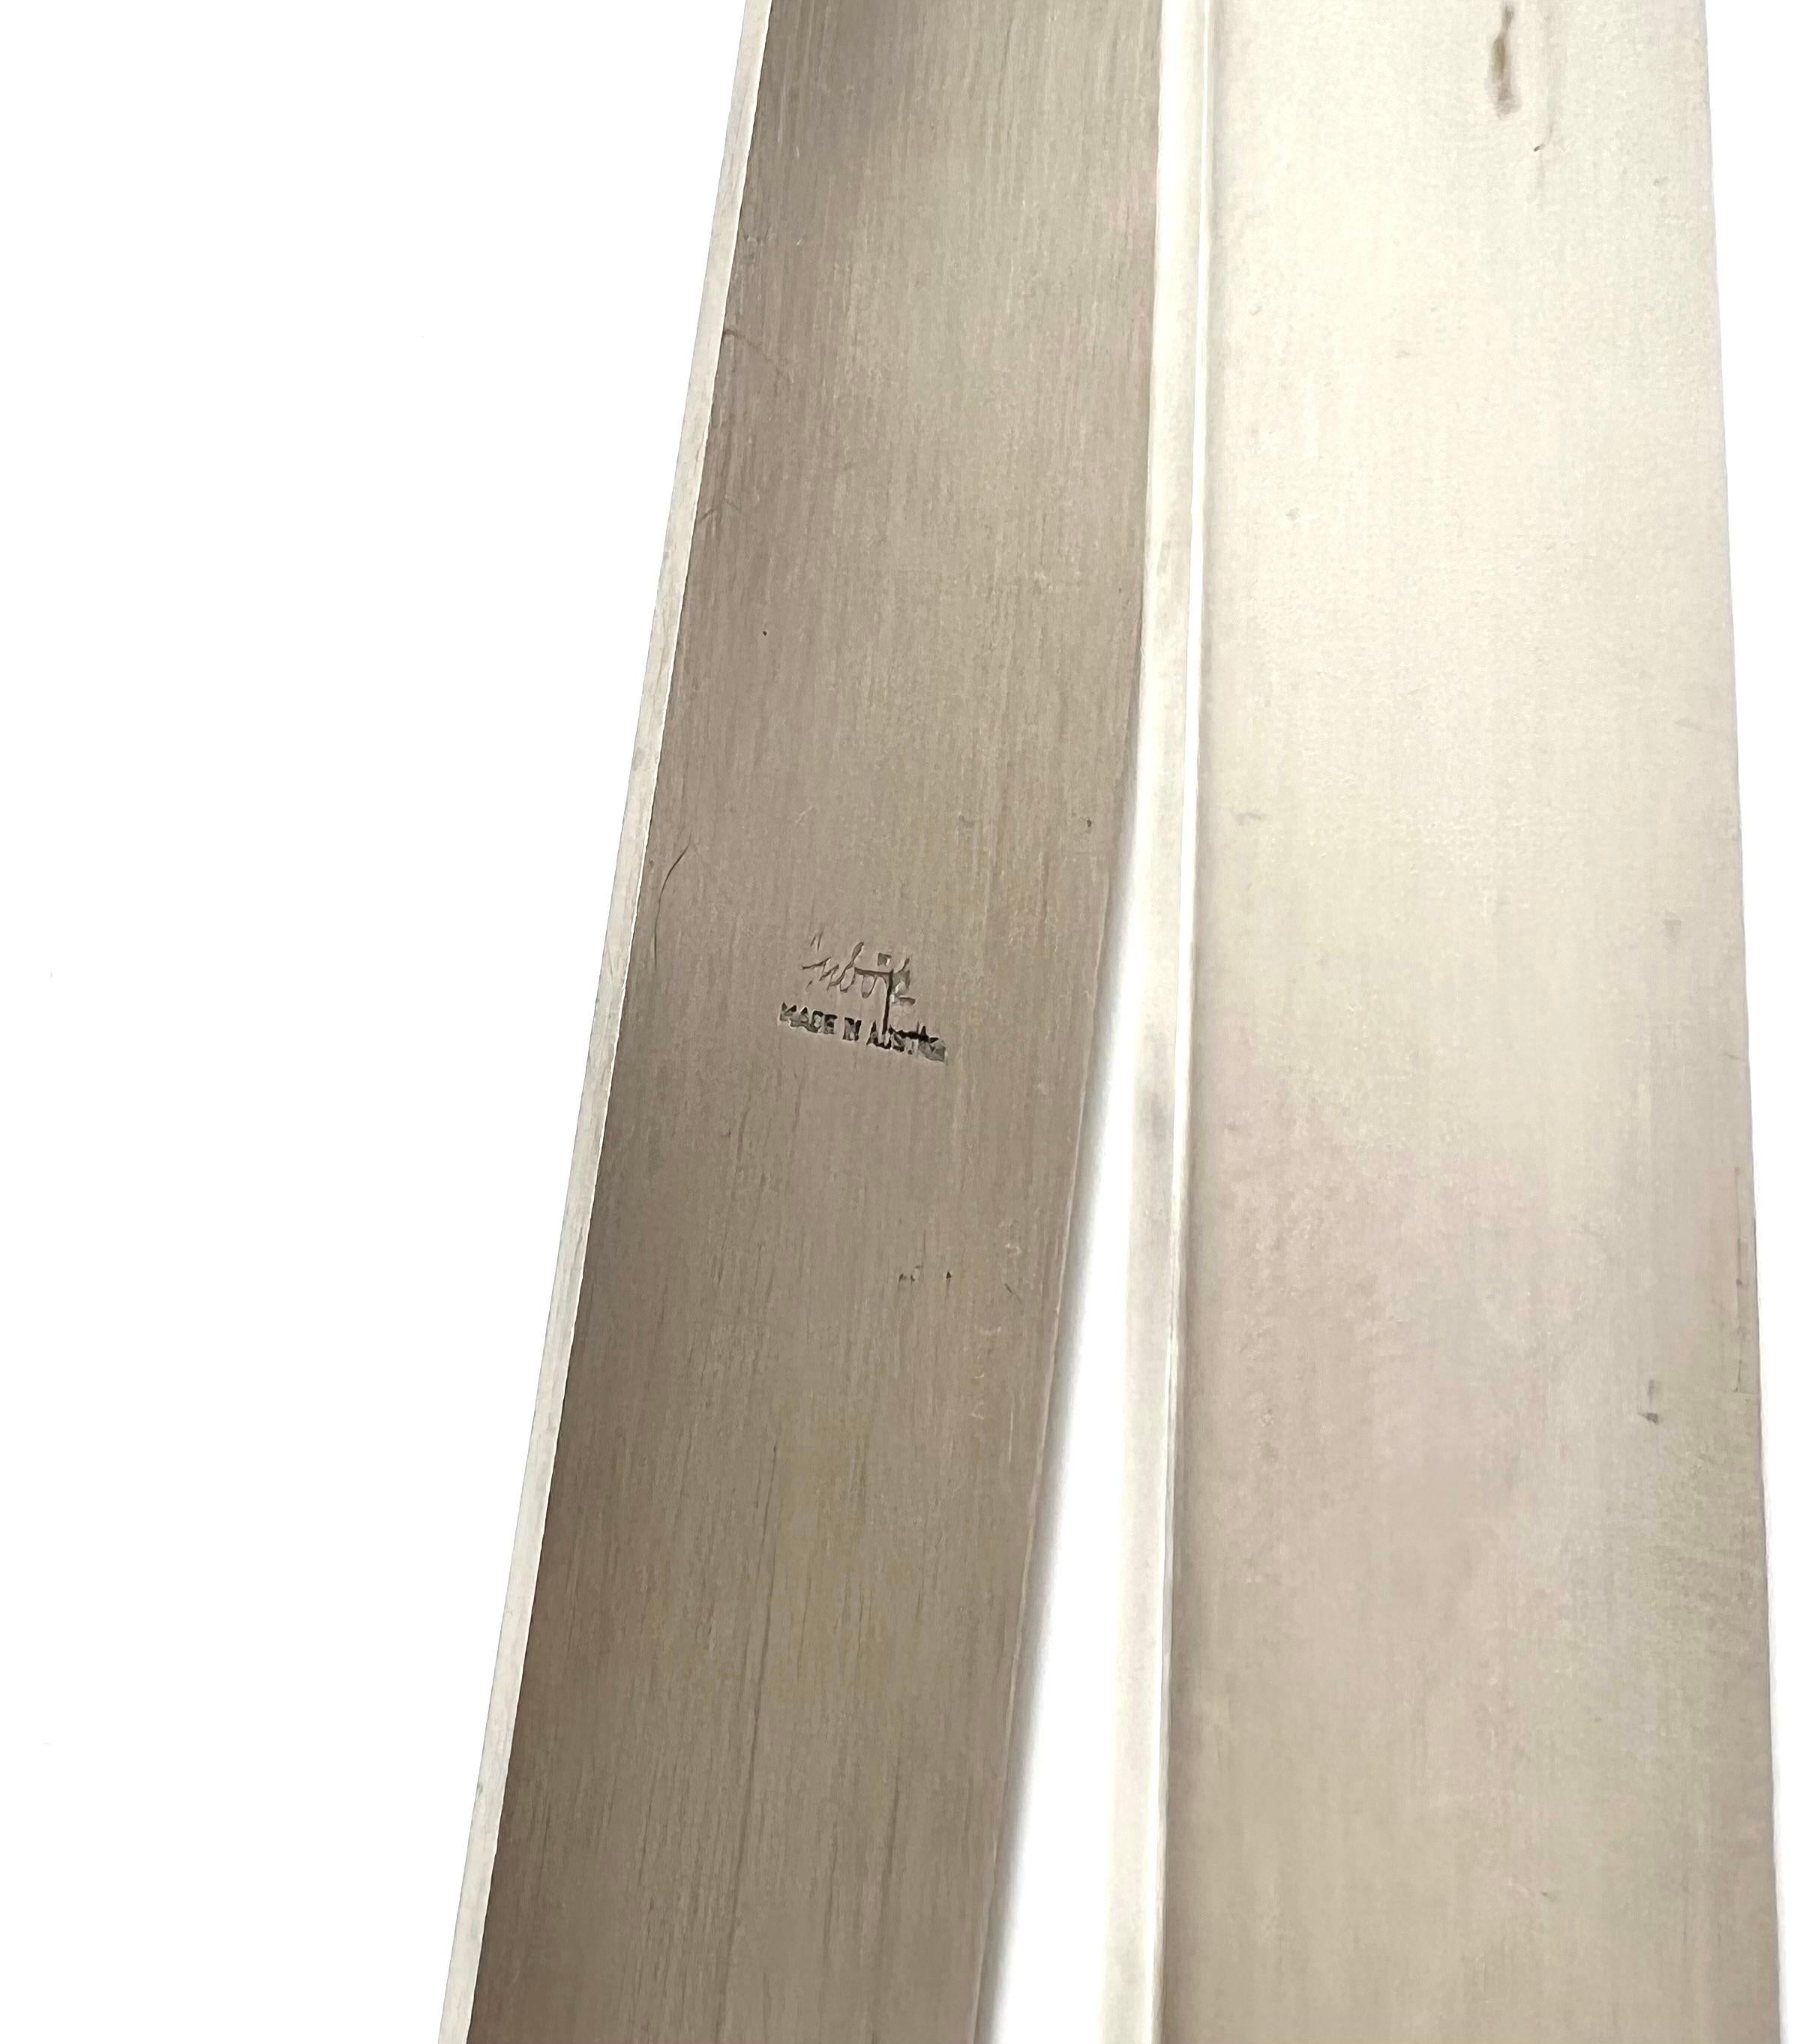 Auböck Servierzange, auf der Innenseite markiert (Auböck MADE IN AUSTRIA).
Hergestellt aus rostfreiem Stahl, befestigt an einem Holzgriff, mit Leder umwickelt
Ausgezeichneter Zustand, wahrscheinlich von der Manufaktur Amboss in Oberösterreich